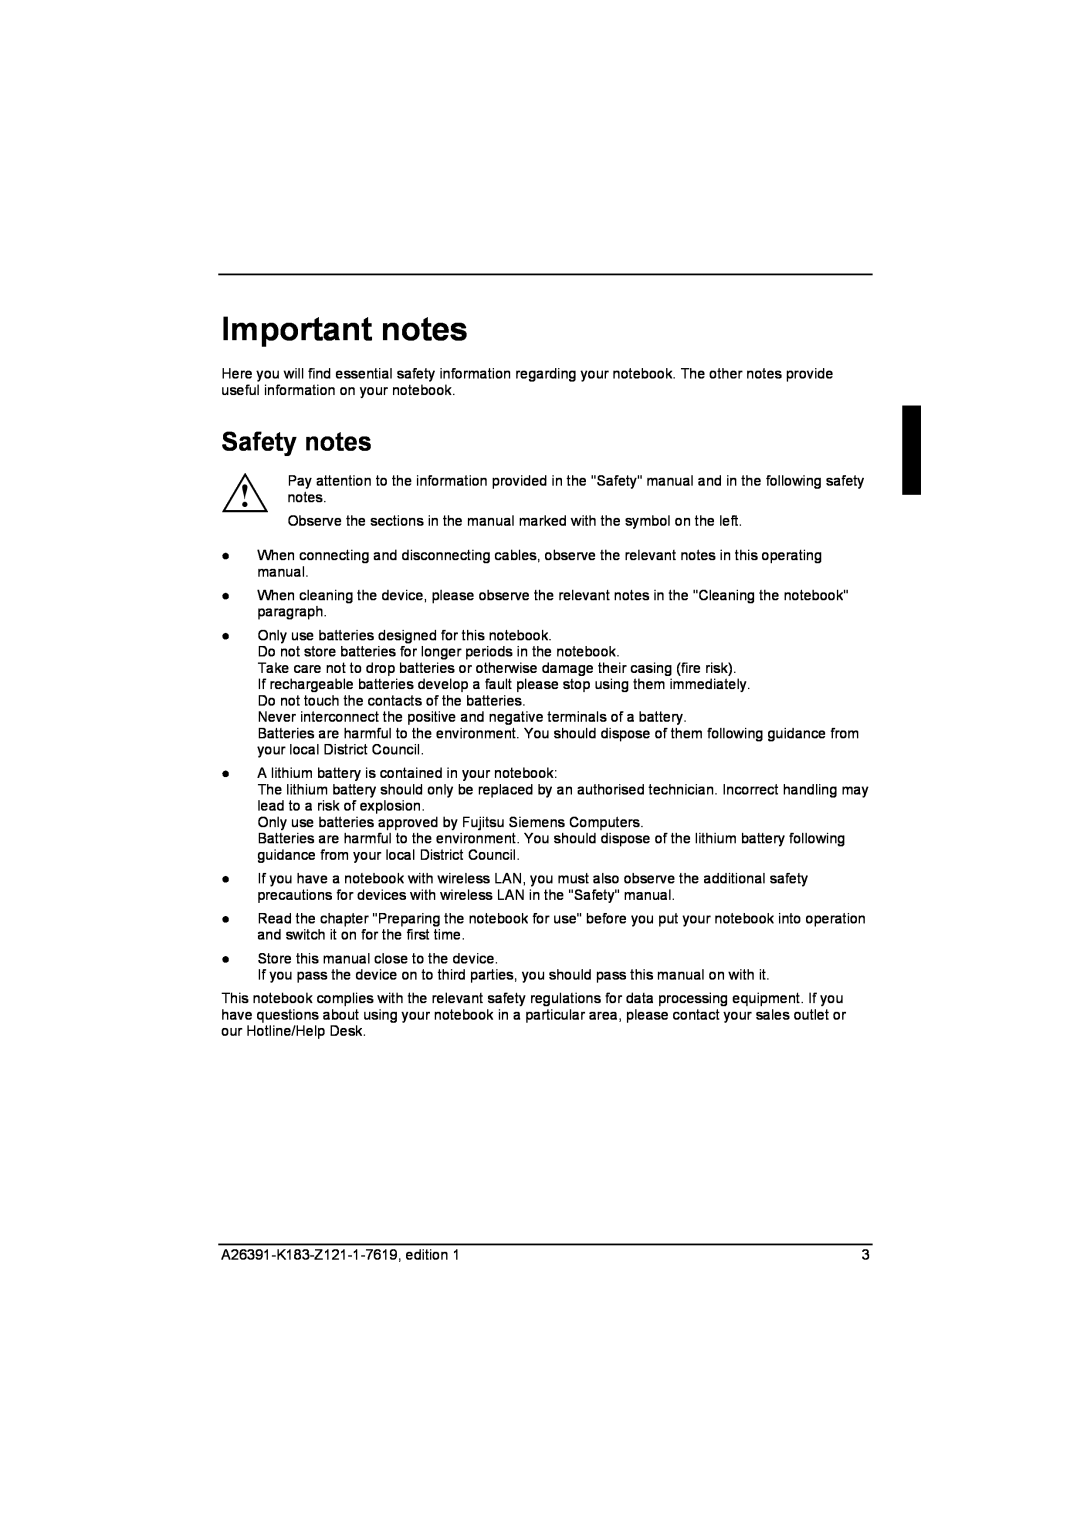 Fujitsu Siemens Computers V2035 manual Important notes, Safety notes 